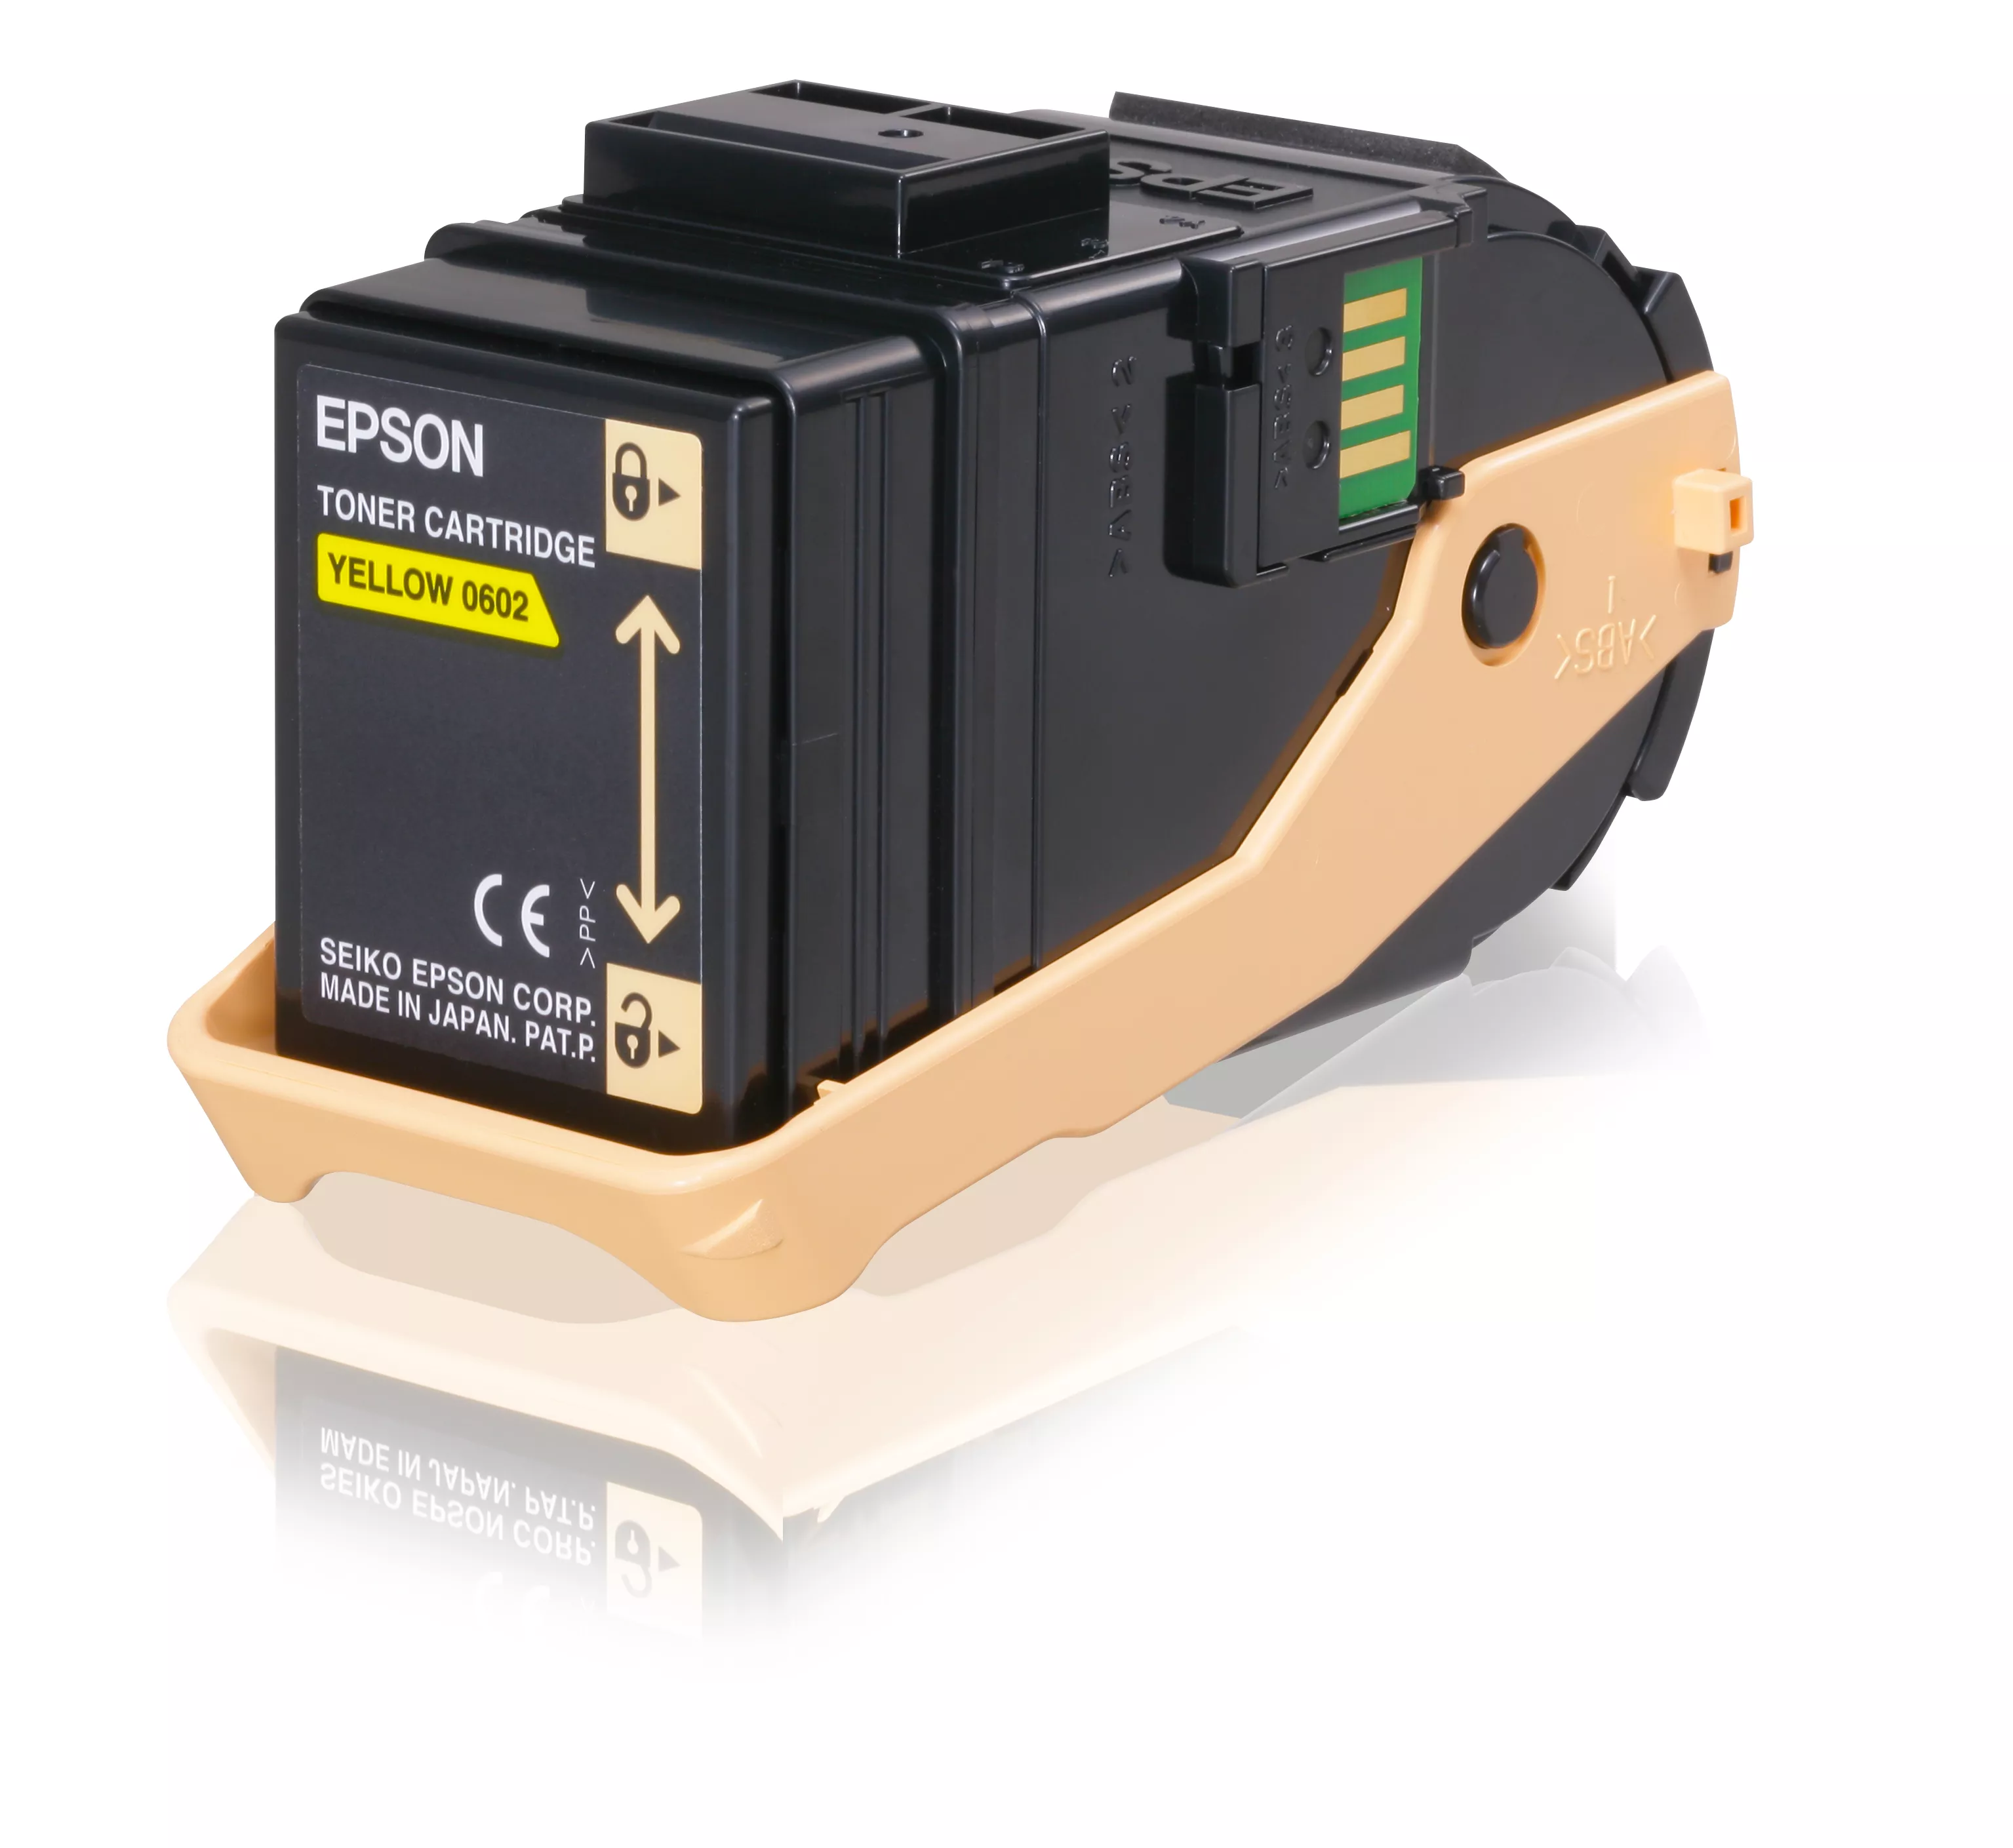 Vente EPSON AL-C9300N cartouche de toner jaune capacité au meilleur prix